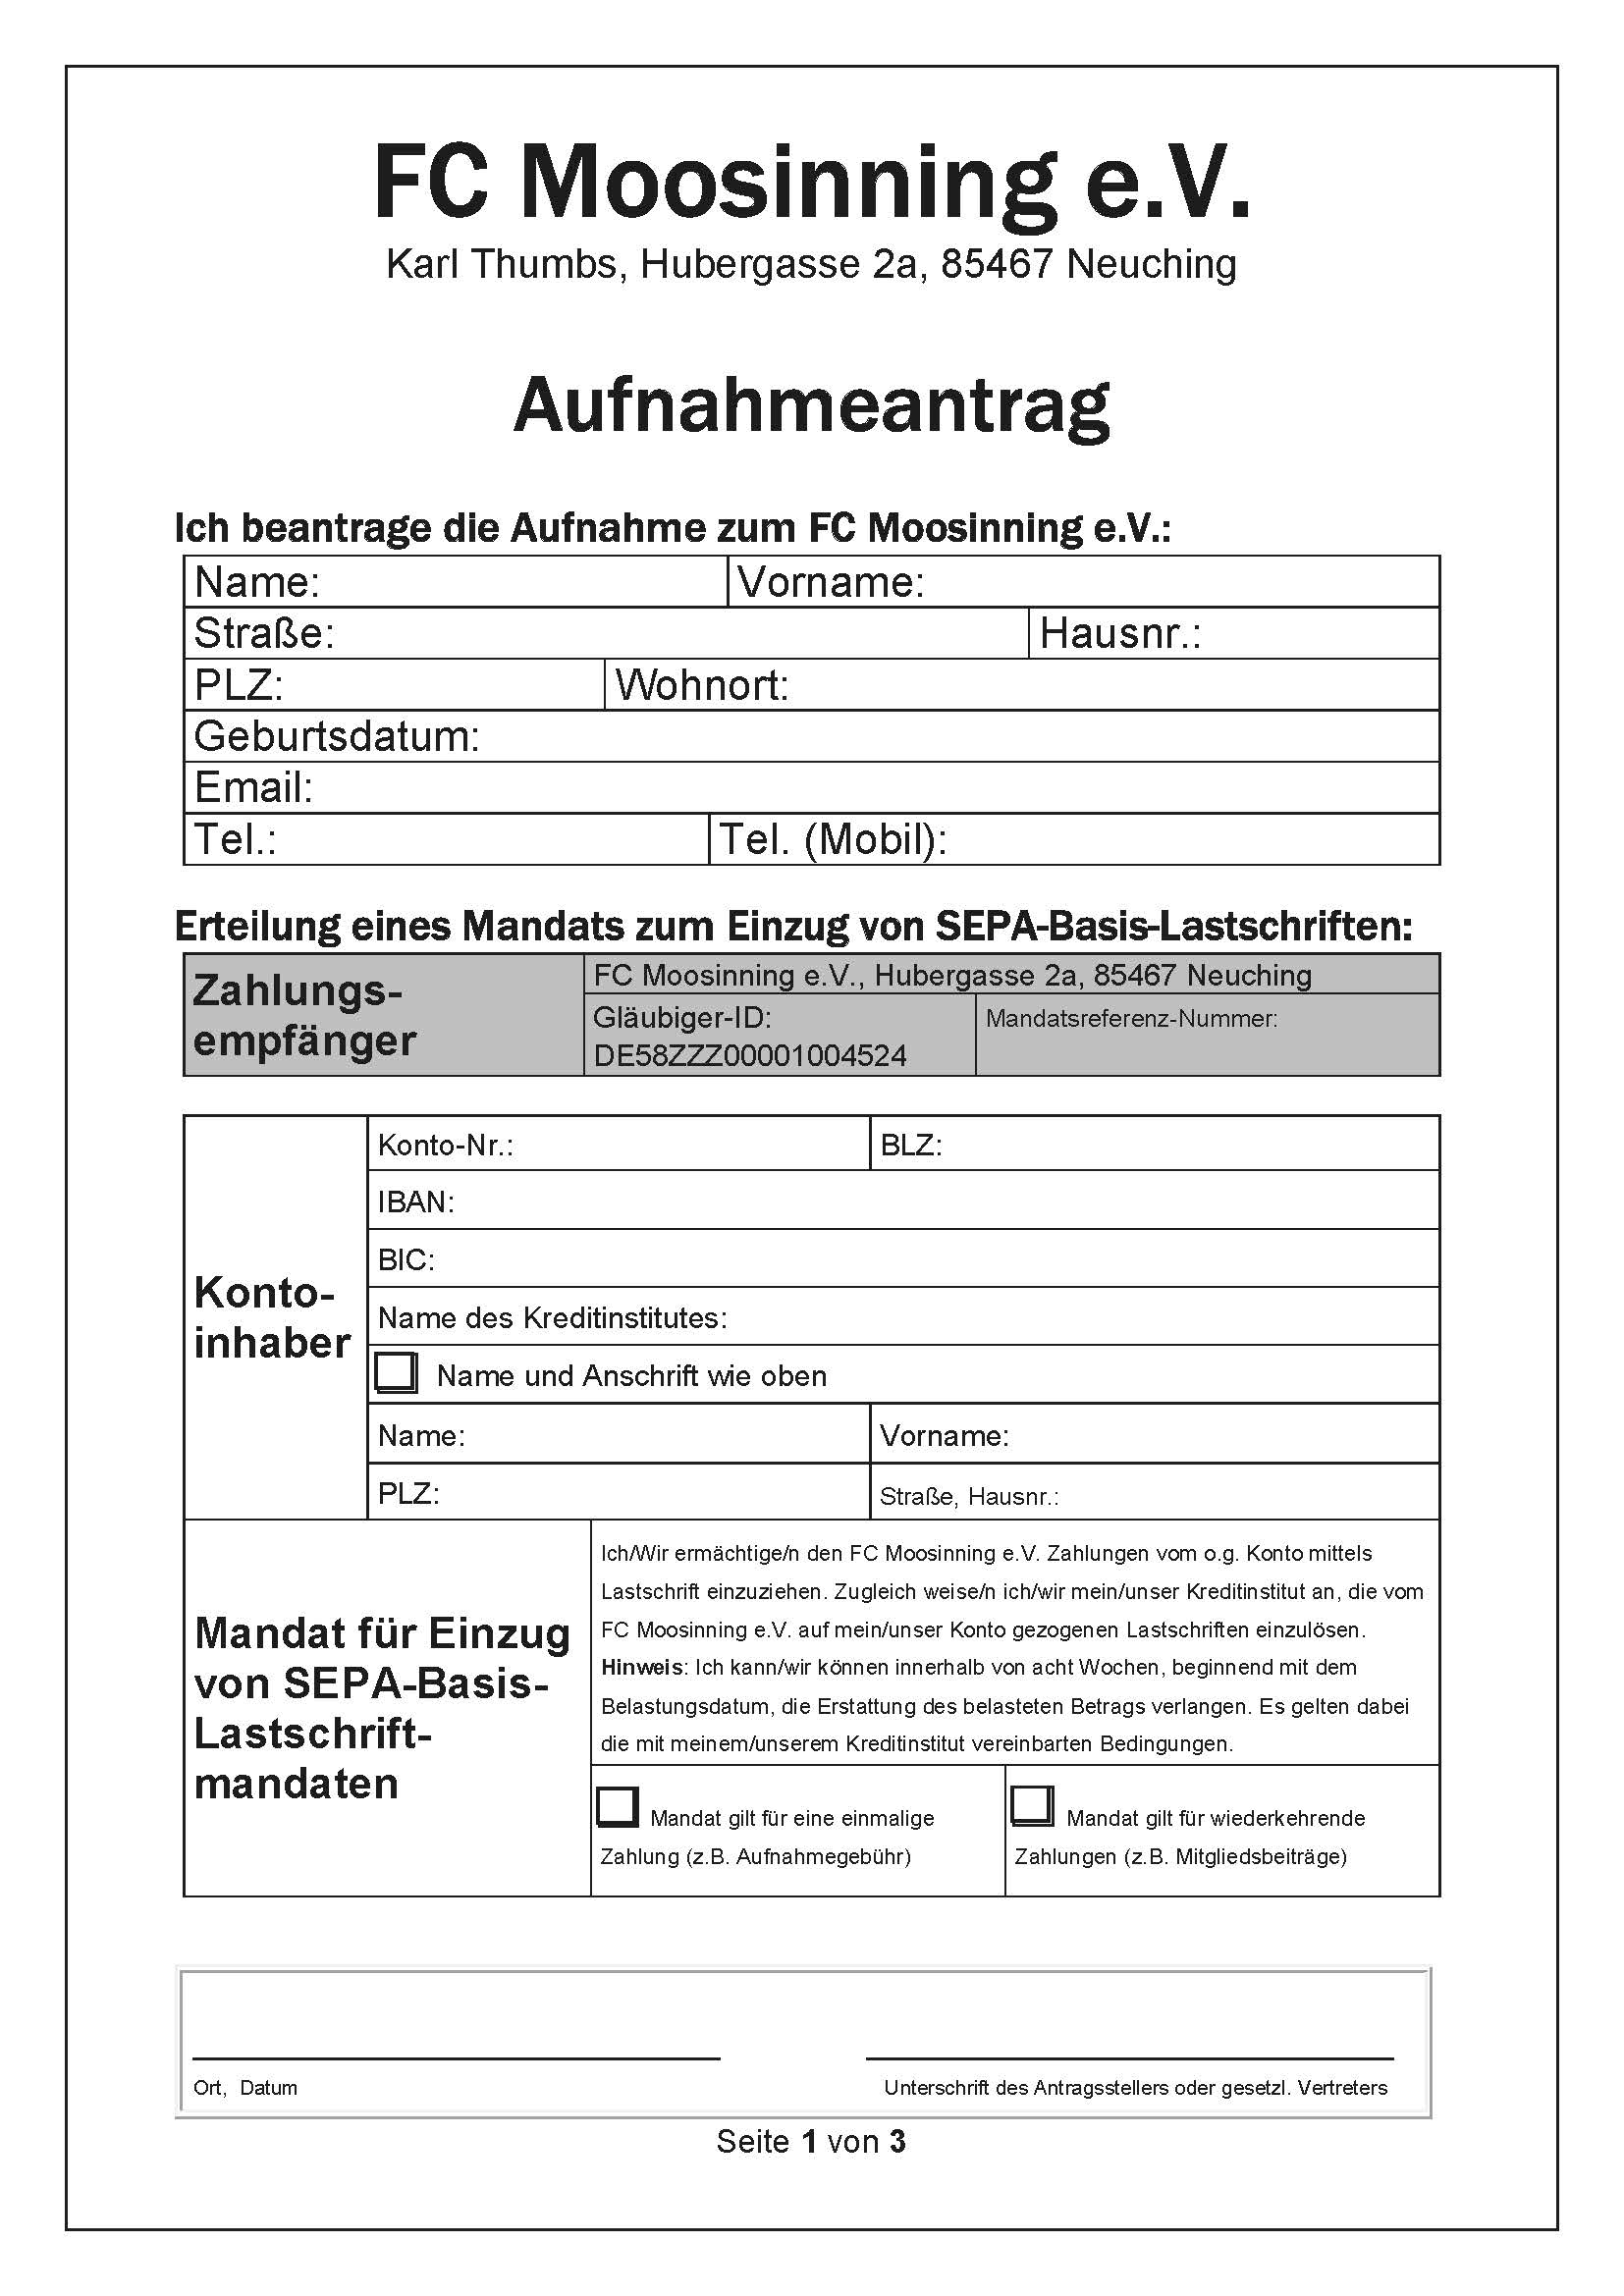 FCM Aufnahmeantrag 2020 SEPA aktiv V1.4 Seite 1